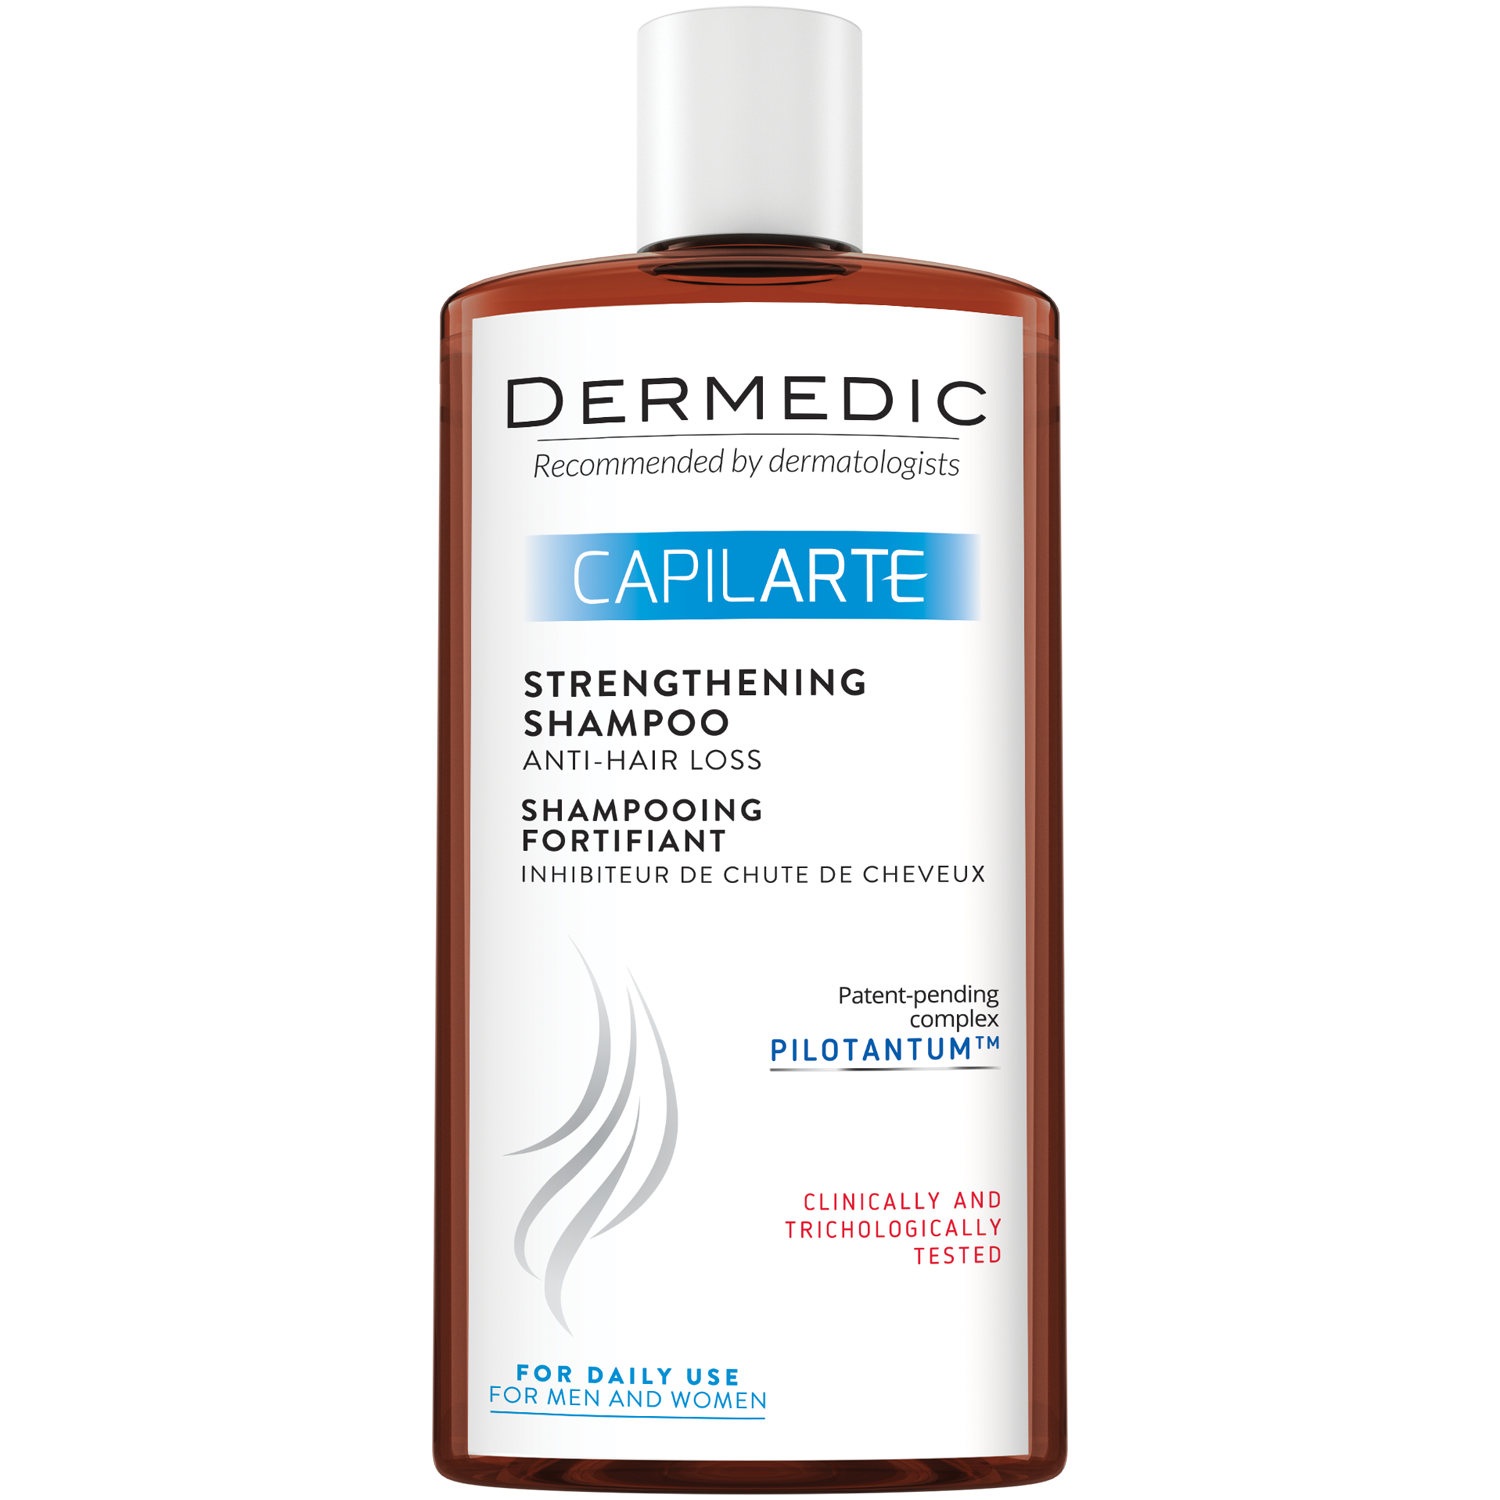 Dermedic Capilarte укрепляющий шампунь, препятствующий выпадению волос, 300 мл